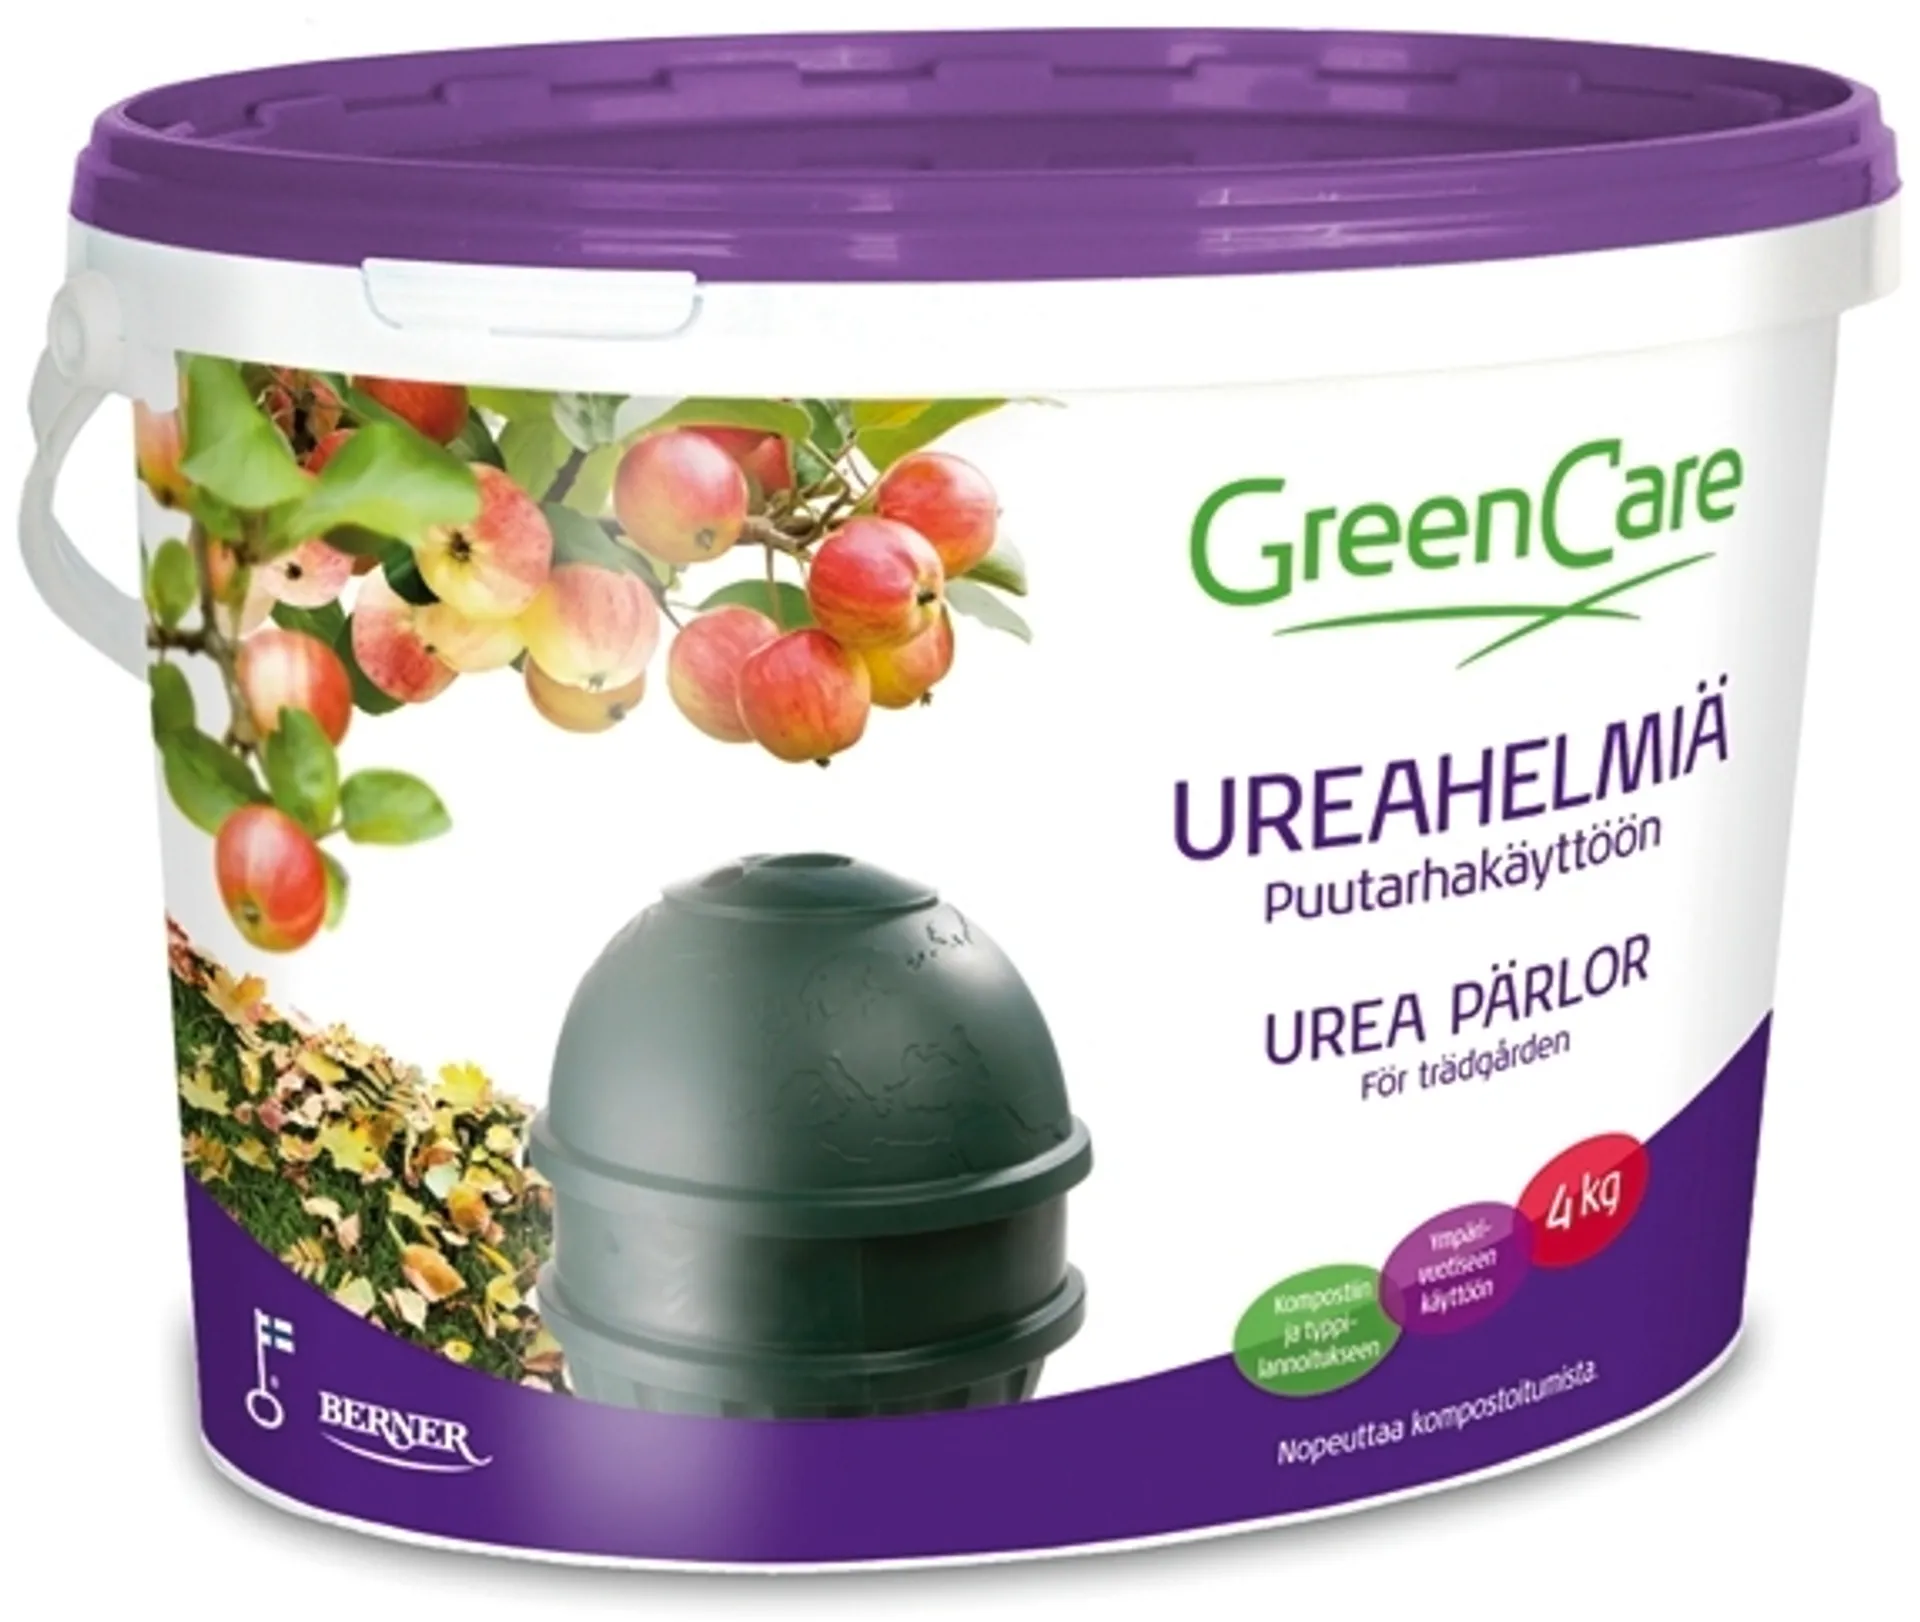 GreenCare Ureahelmiä puutarhakäyttöön 4kg